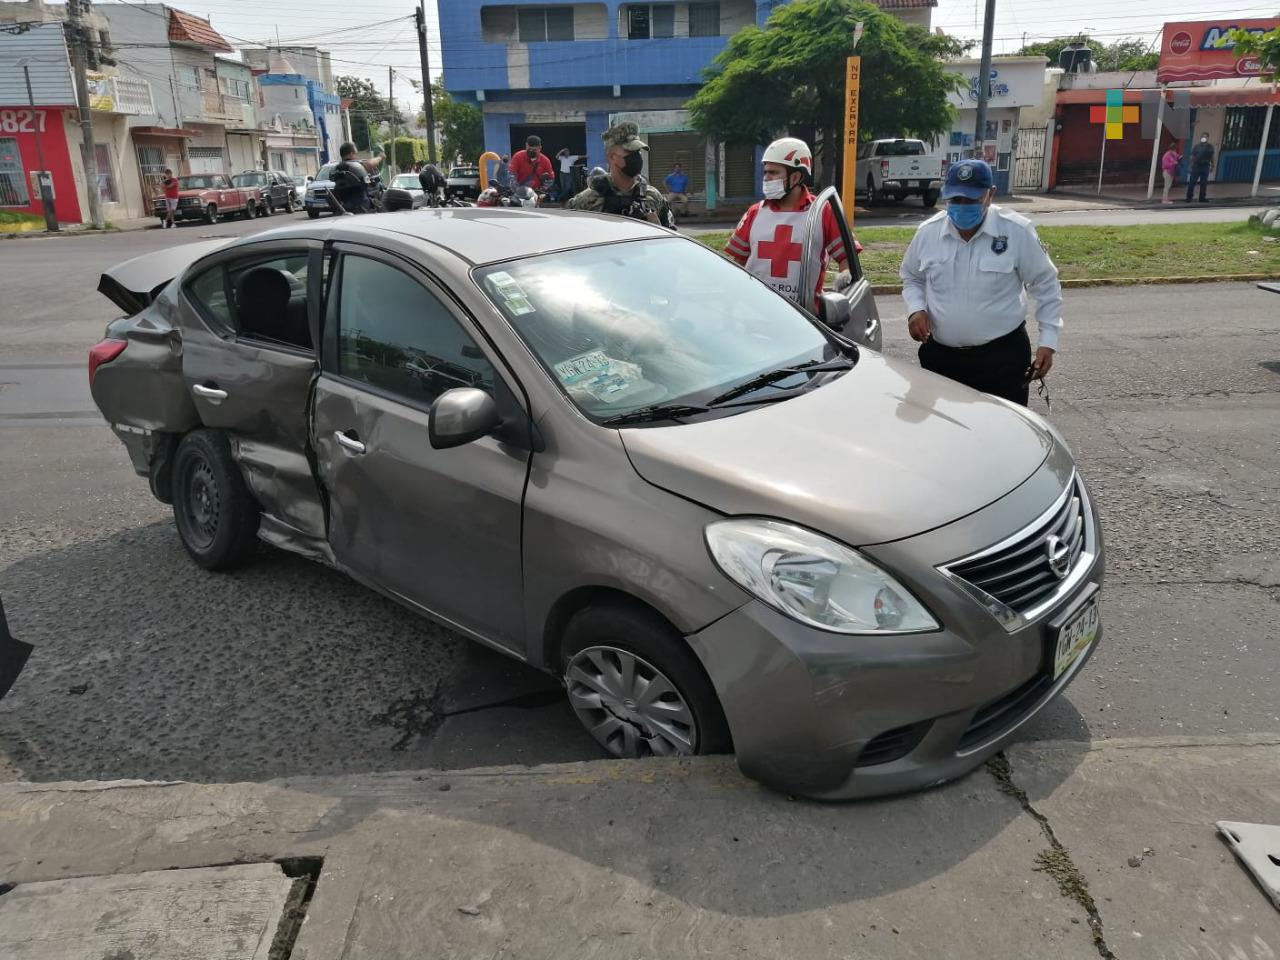 Patrulla del Ayuntamiento de Veracruz se impactó contra un vehículo particular